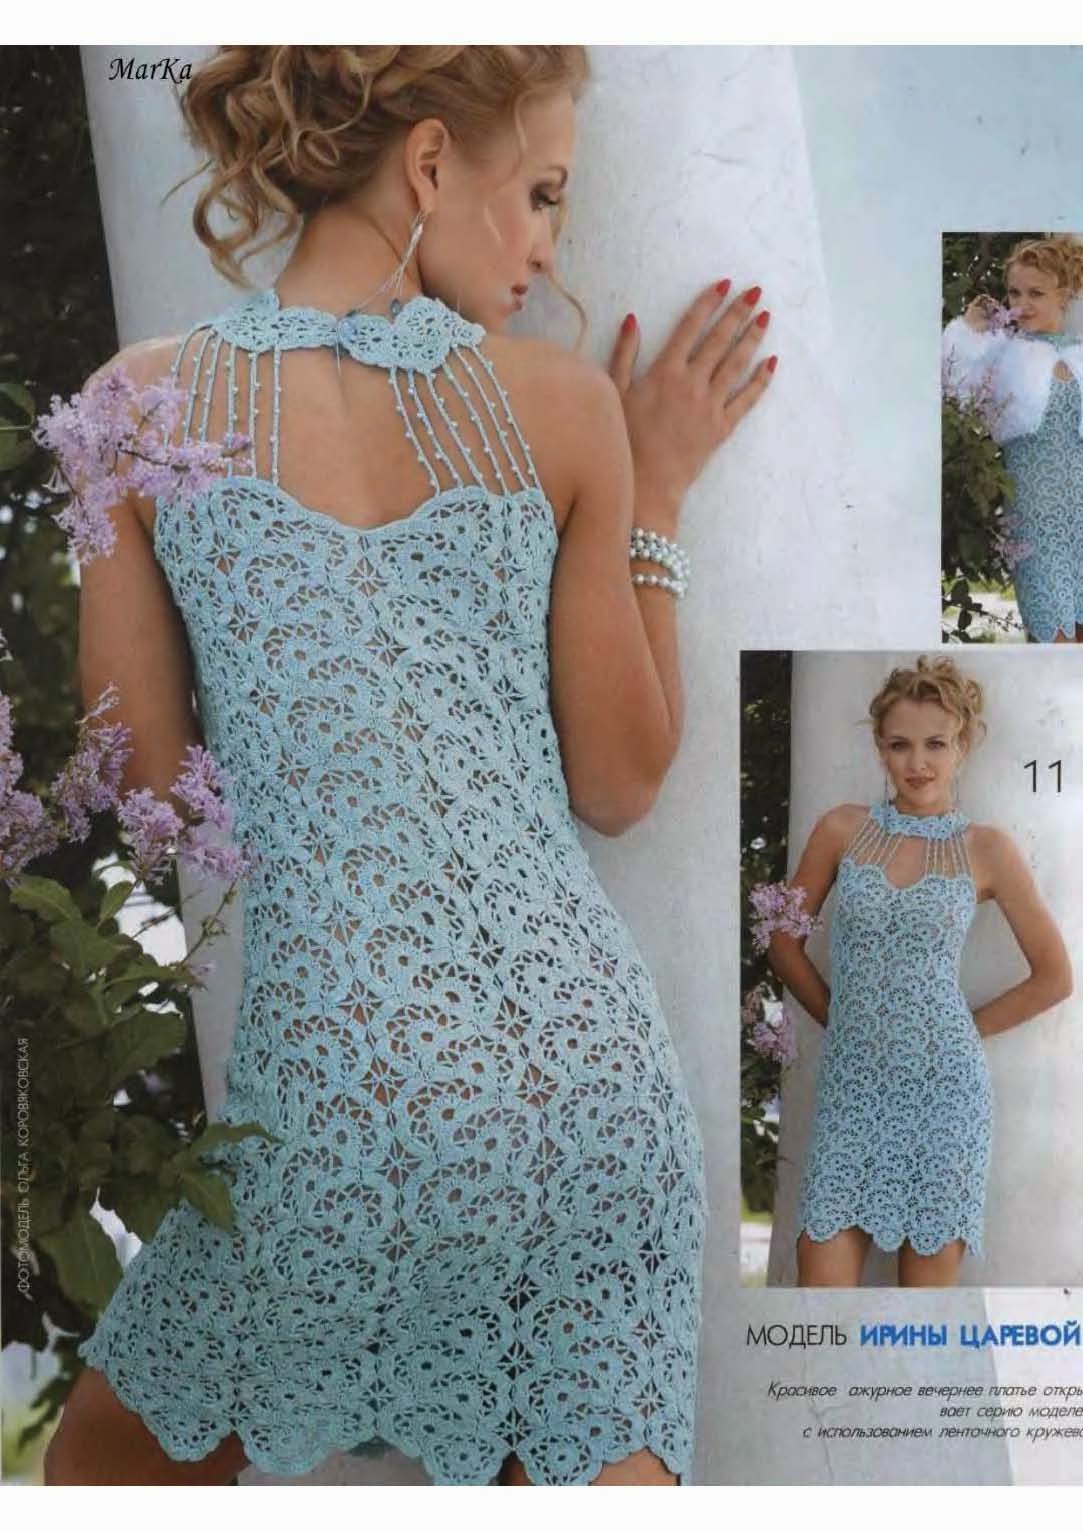 Tía Catedral Pegajoso Vestido Elegante al Crochet / Patrones revista rusa